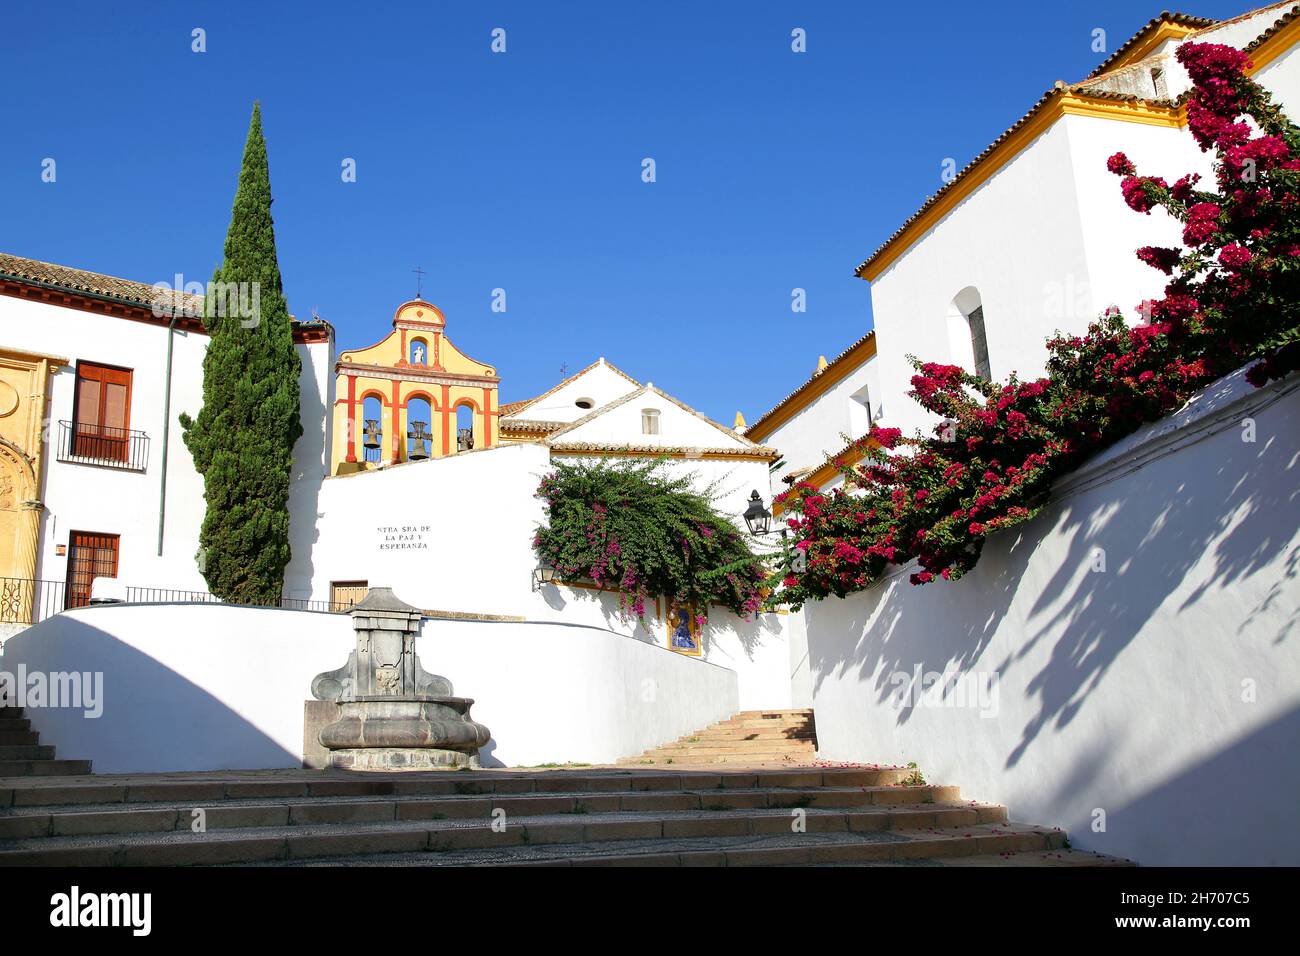 Plaza Nuestra Señora de la Paz y Esperanza in Córdoba Spanien.Platz neben dem Christus der Laternen, voller Blumen und Stufen, die zum Bailio-Hang führen. Stockfoto